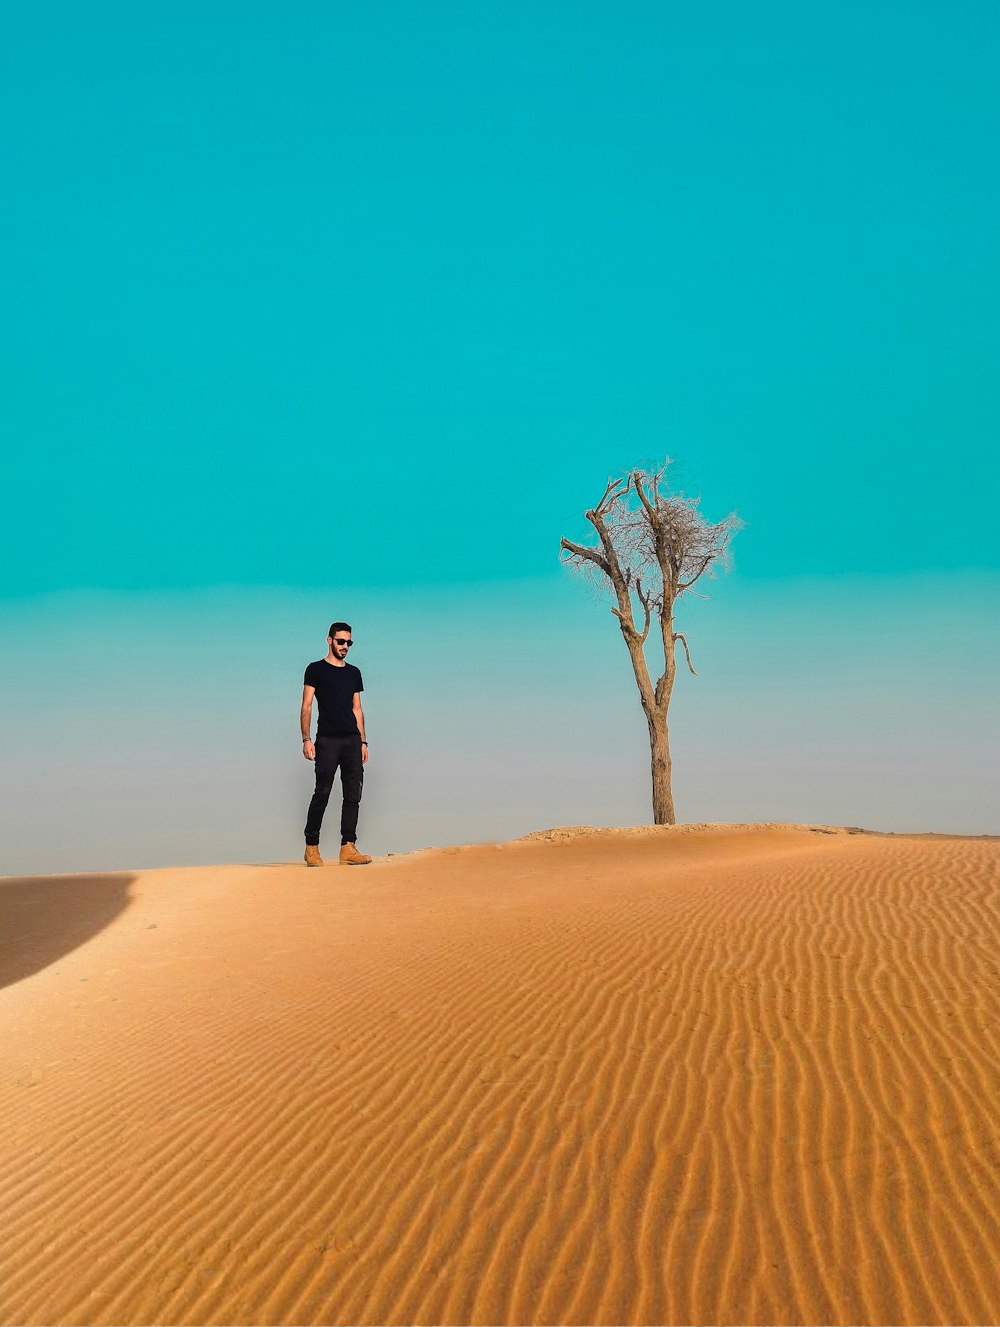 Mann steht auf Sandfeld in der Nähe eines vertrockneten Baumes